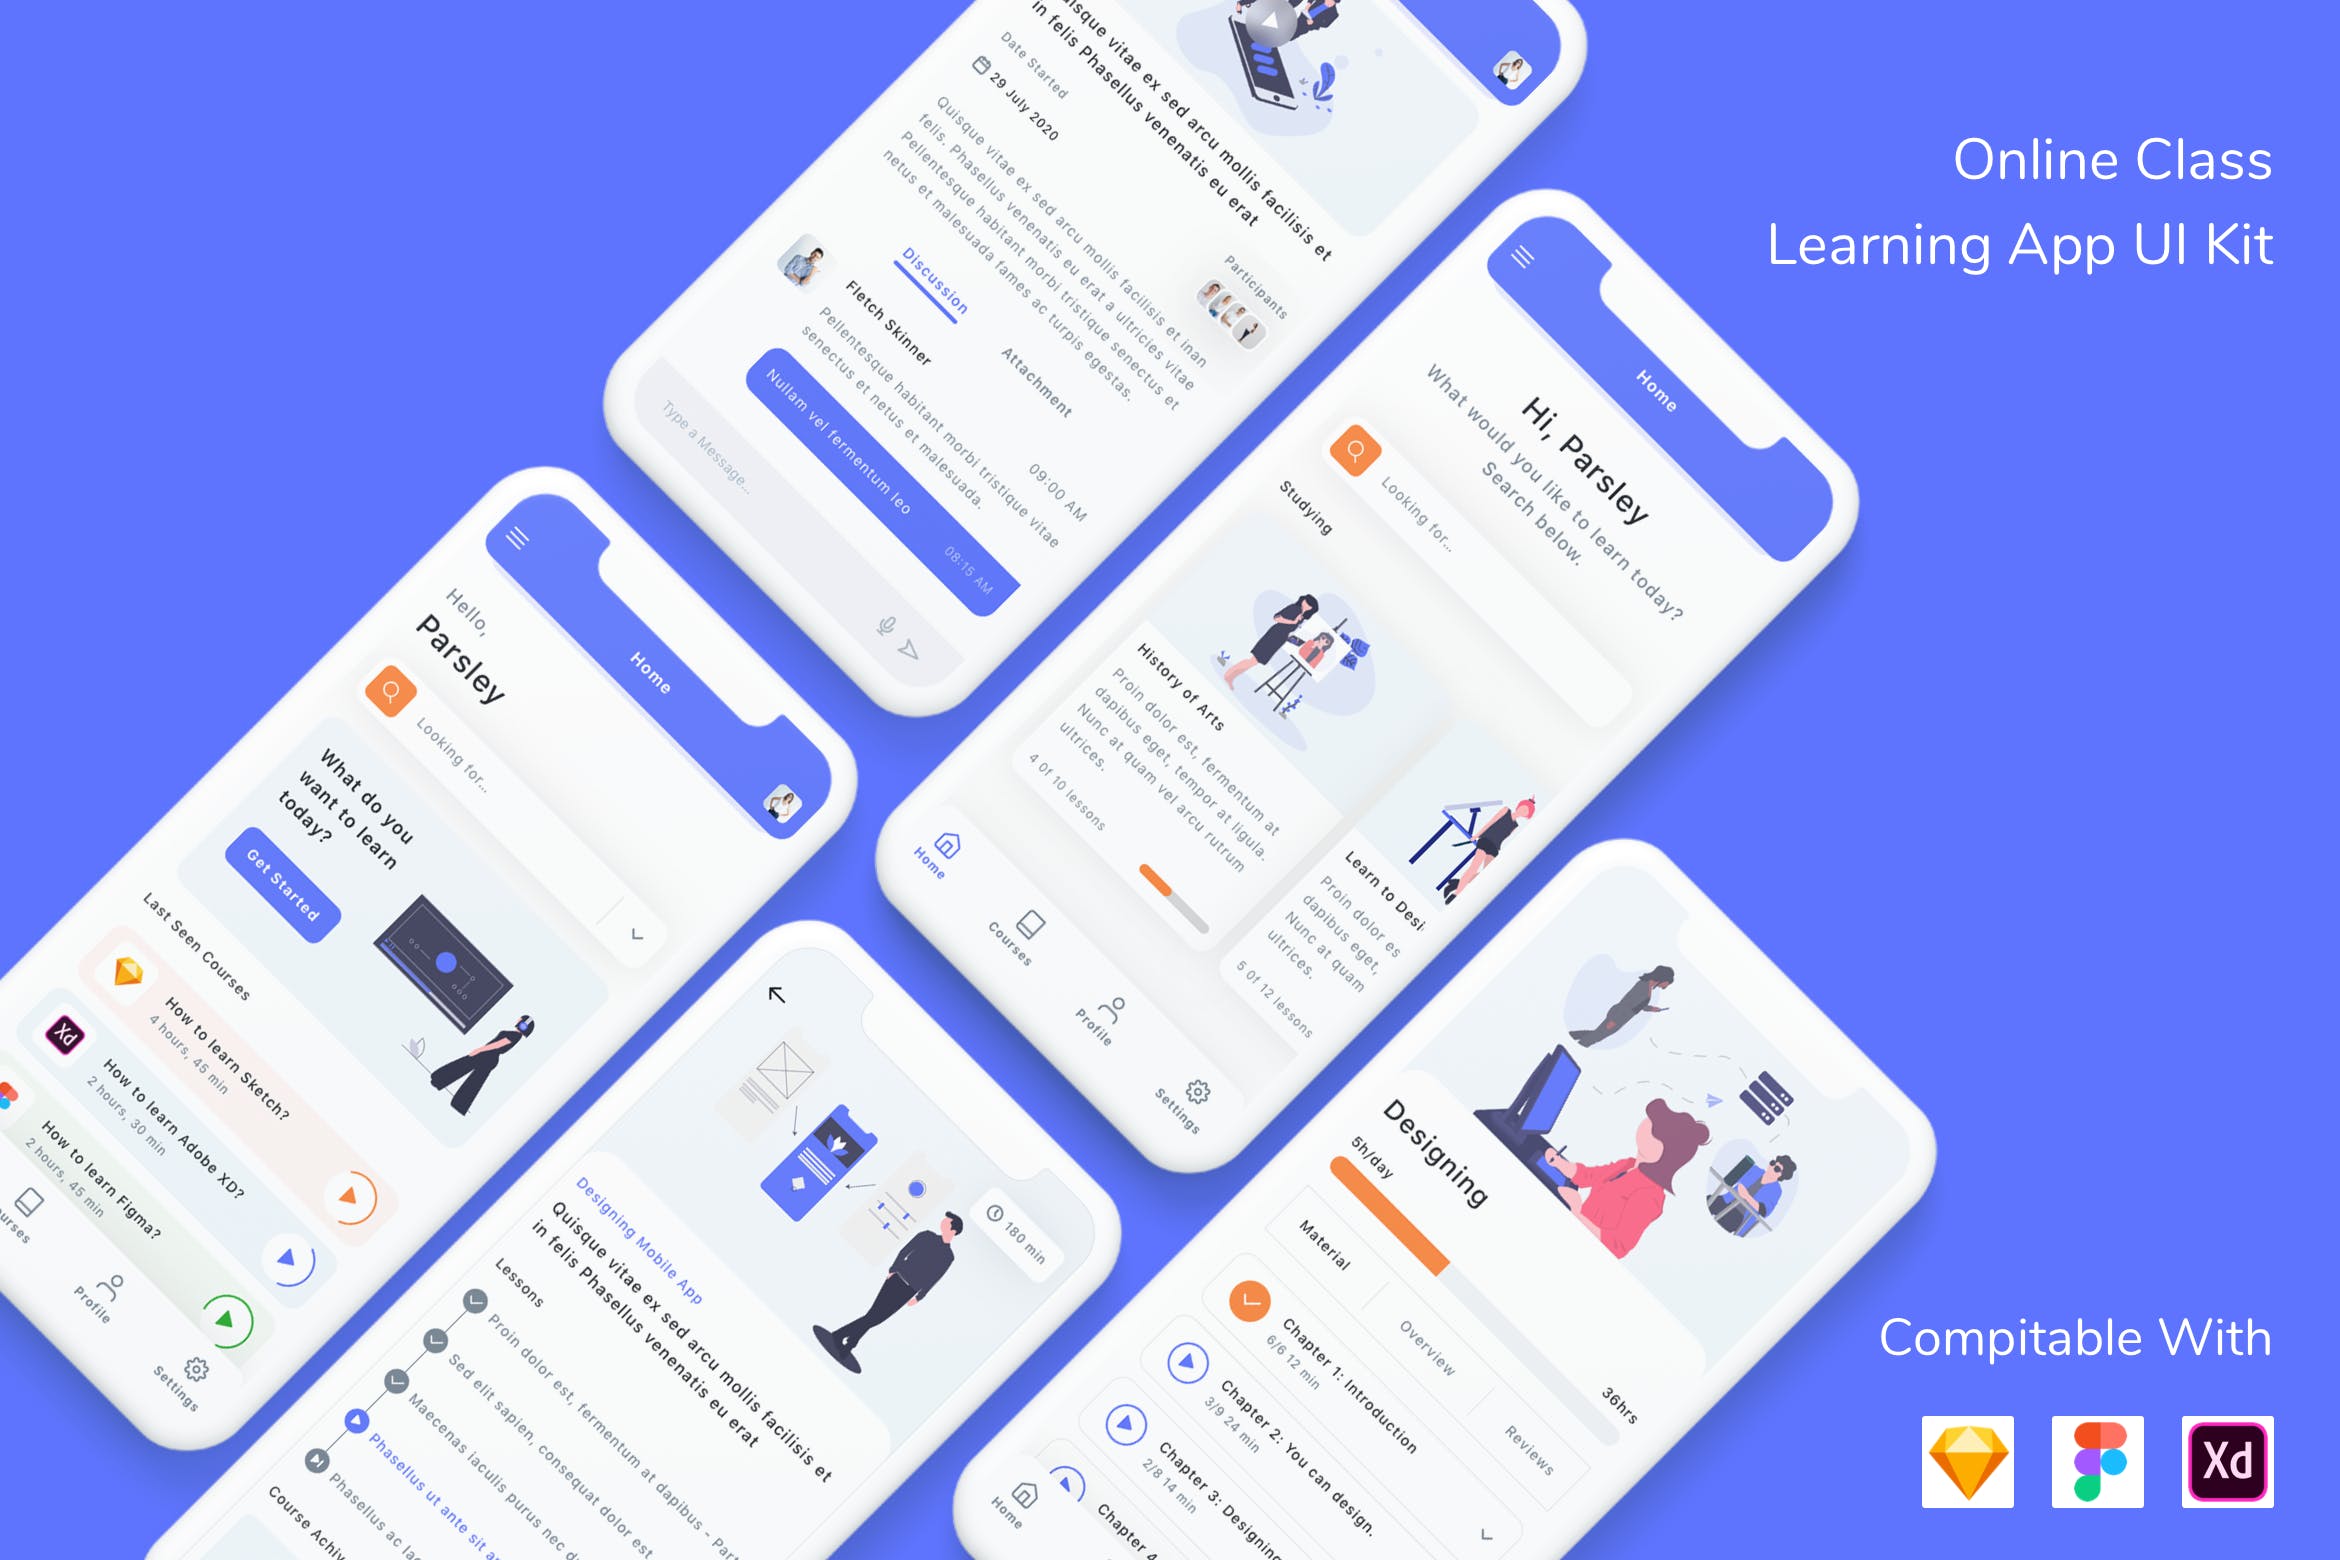 APP应用UI在线课堂设计套件 Online Class Learning App UI Kit设计素材模板